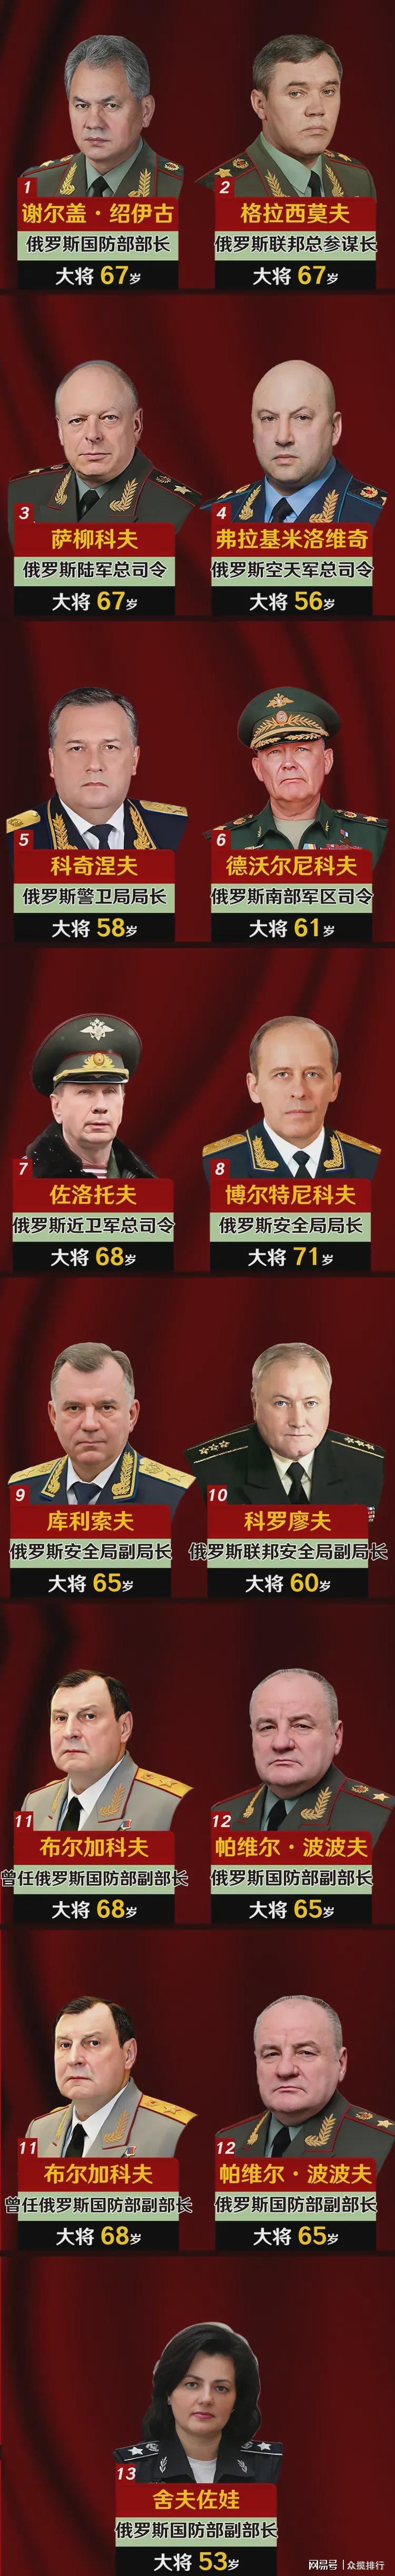 俄罗斯现役13位大将及职位一览图,个个都是精干人物